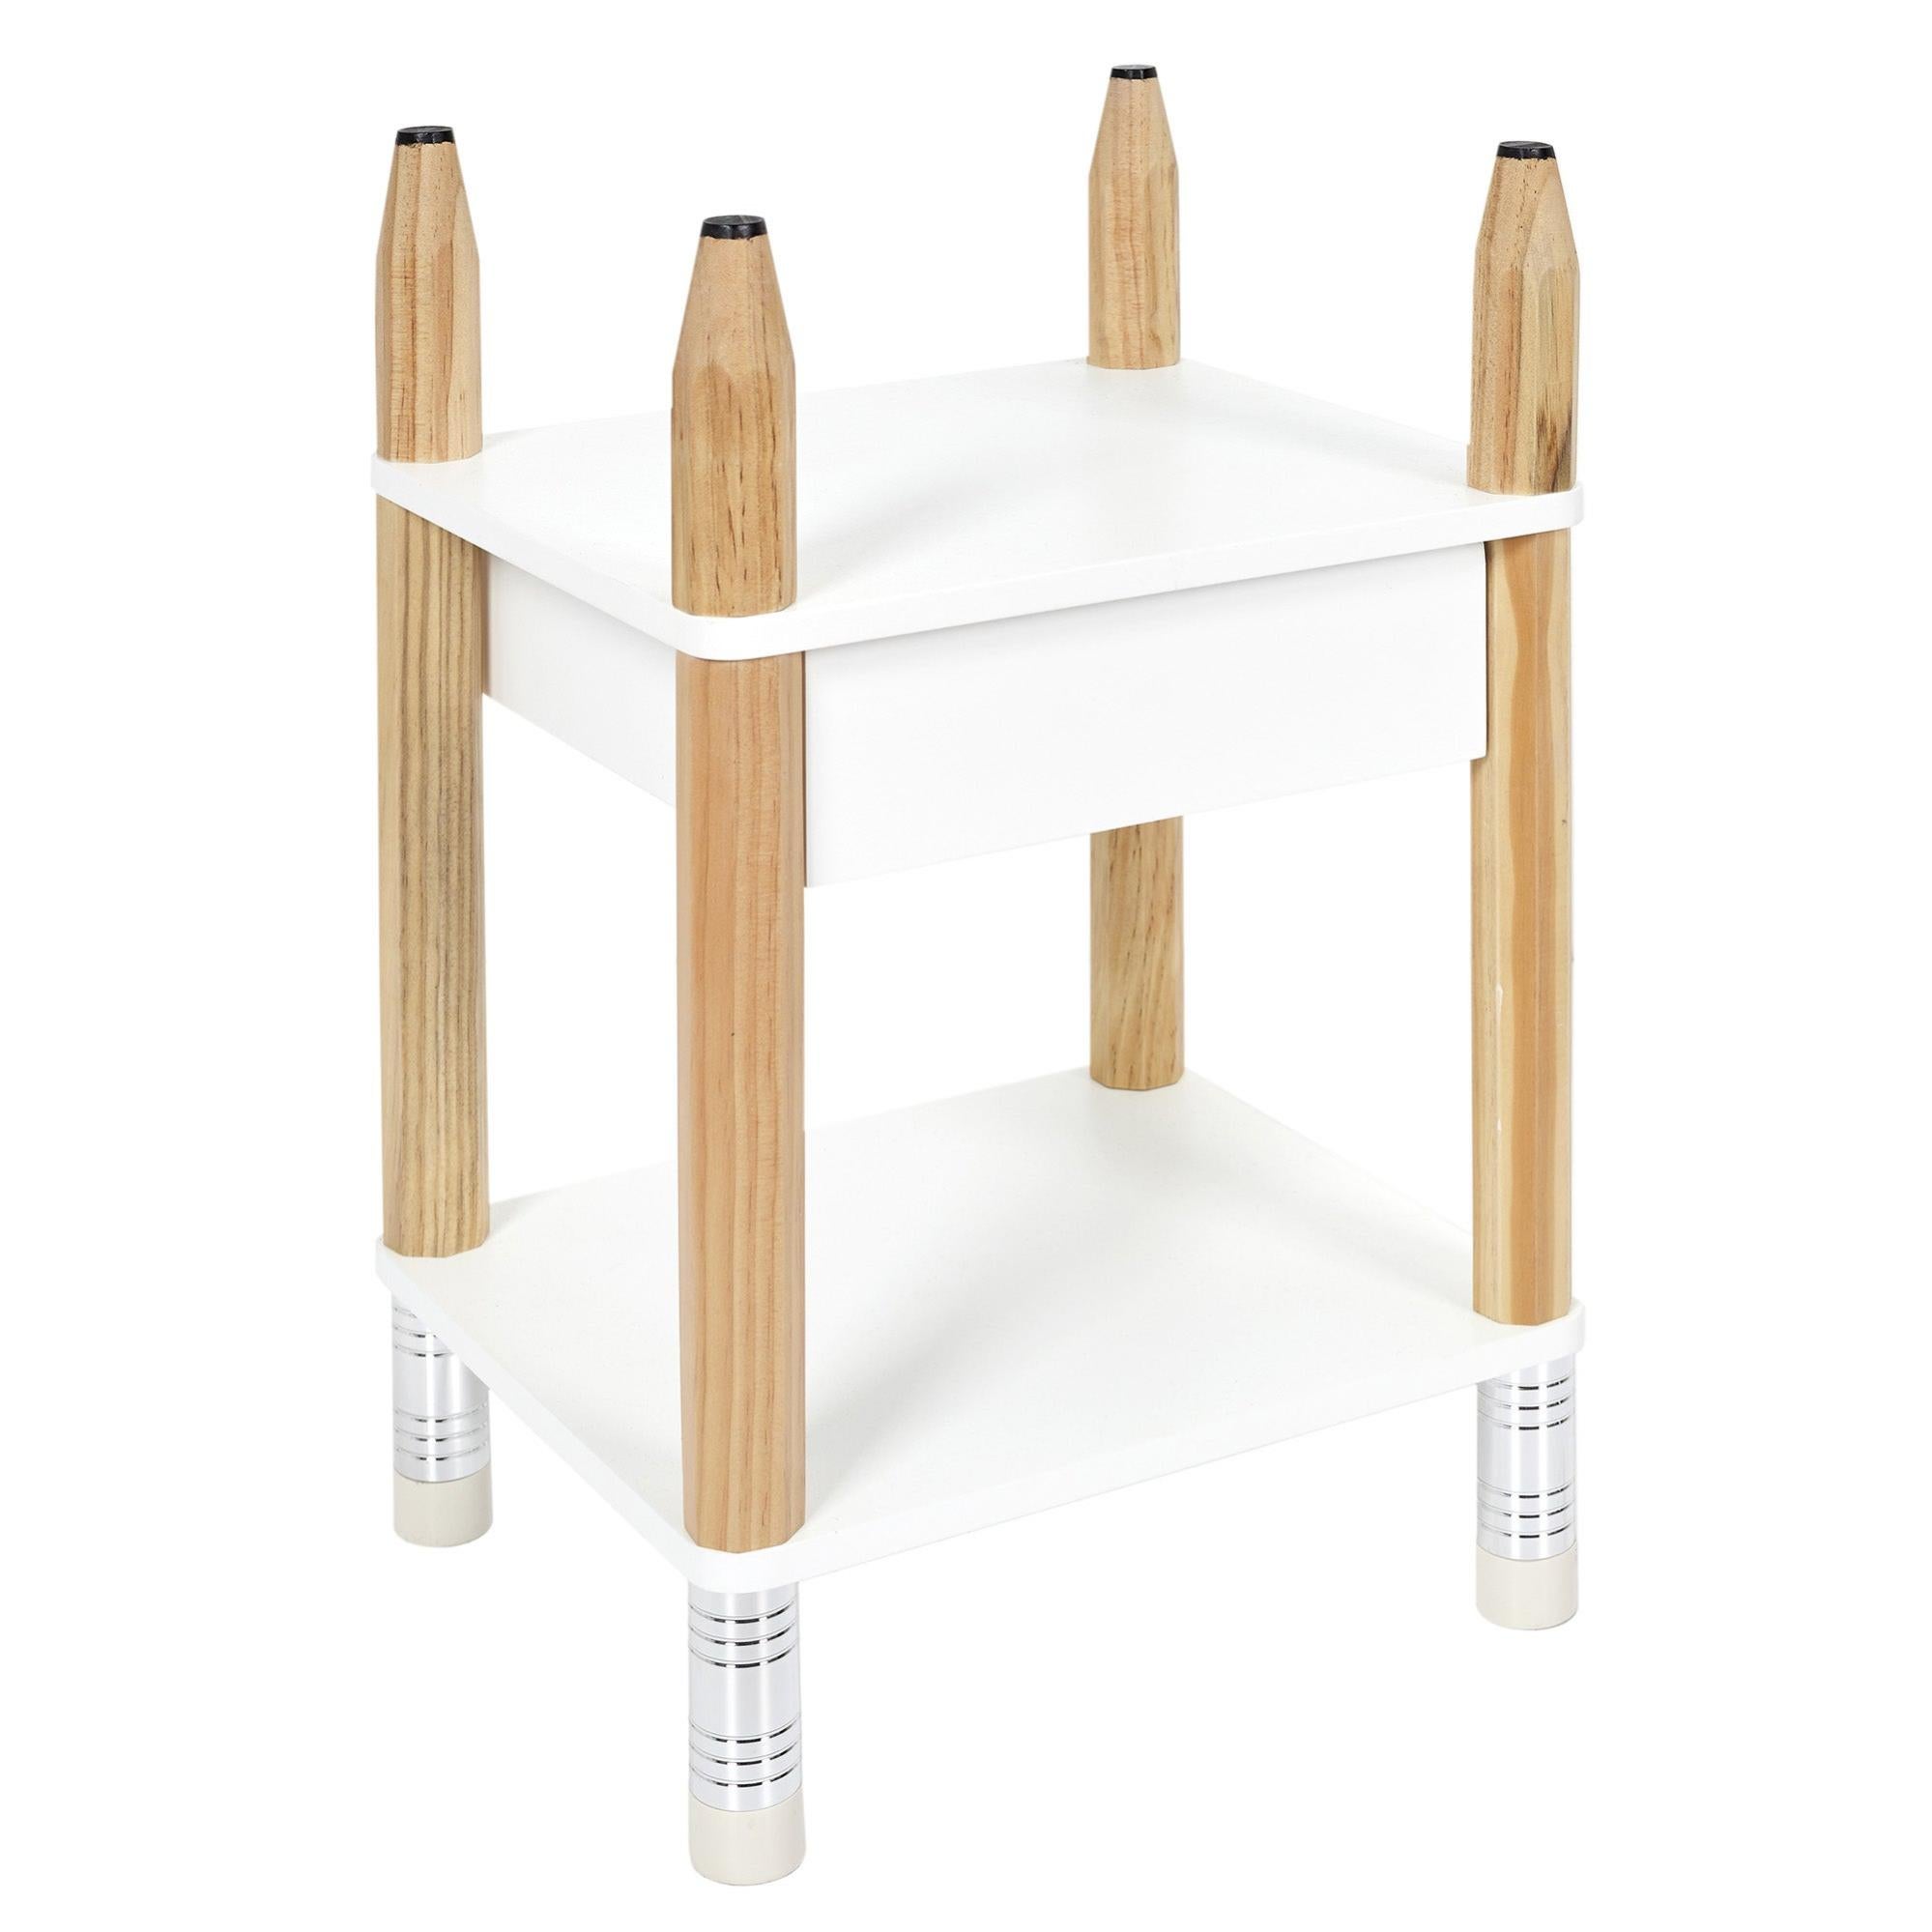 Cajonera kit pencil de madera color blanco con un cajón de 51x30x34cm